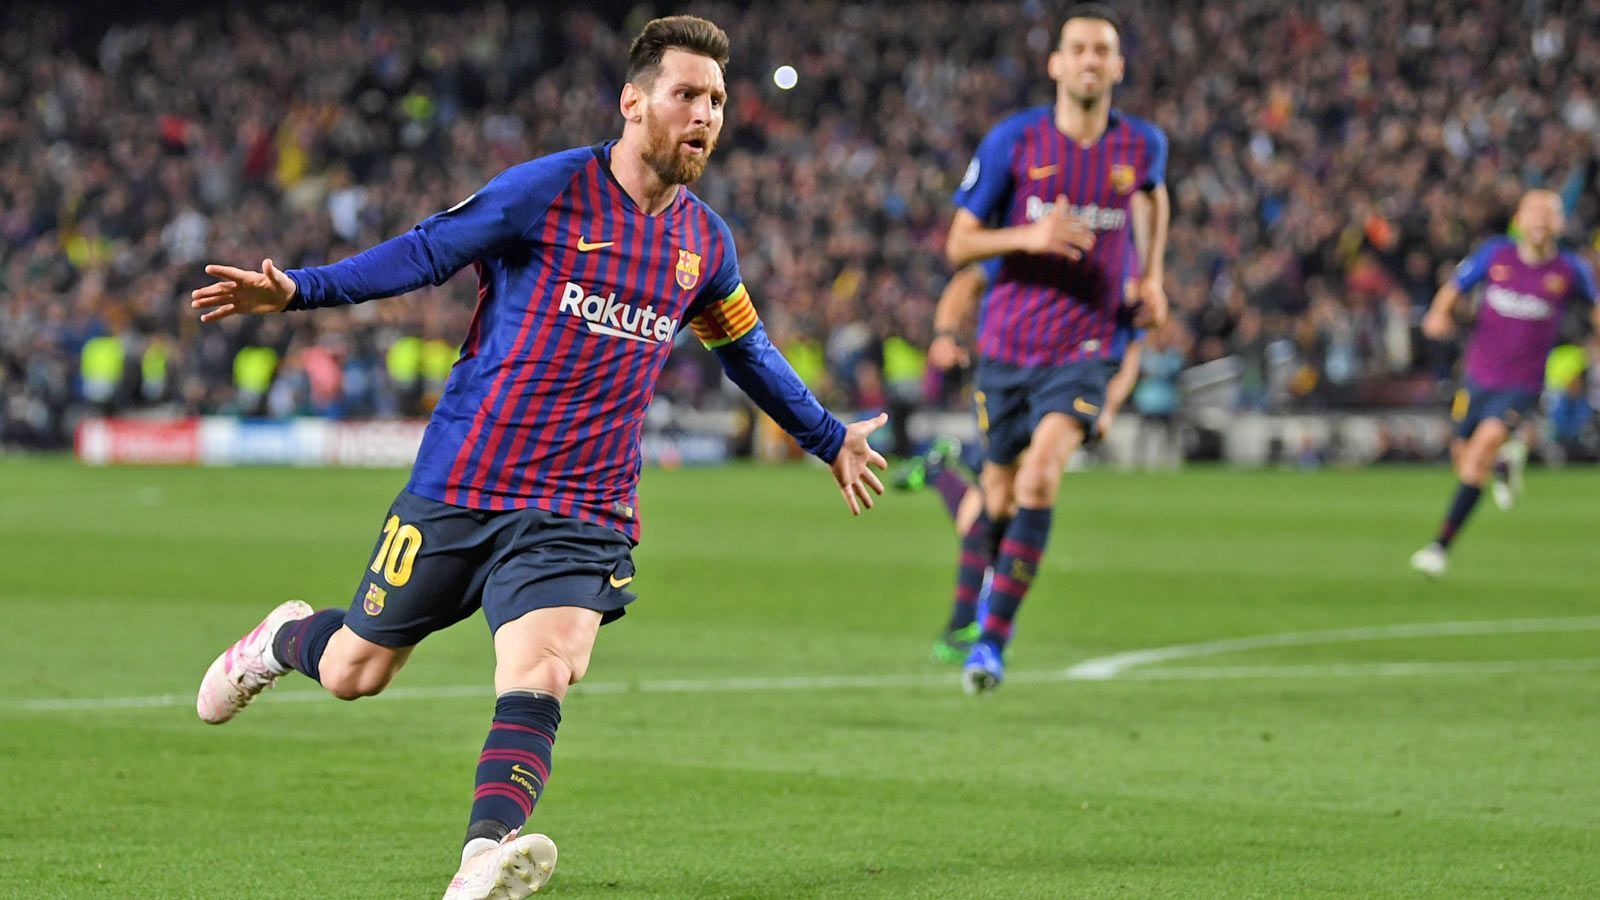 
                <strong>Riesenjubel bei Messi unc Co.</strong><br>
                Torschütze Lionel Messi dreht jubelnd ab. Der Treffer bedeutet für ihn persönlich einen weiteren Meilenstein. Es war sein 600. Tor im Trikot des FC Barcelona - und das auf den Tag genau 14 Jahre nach seinem ersten Treffer für die Katalanen.
              